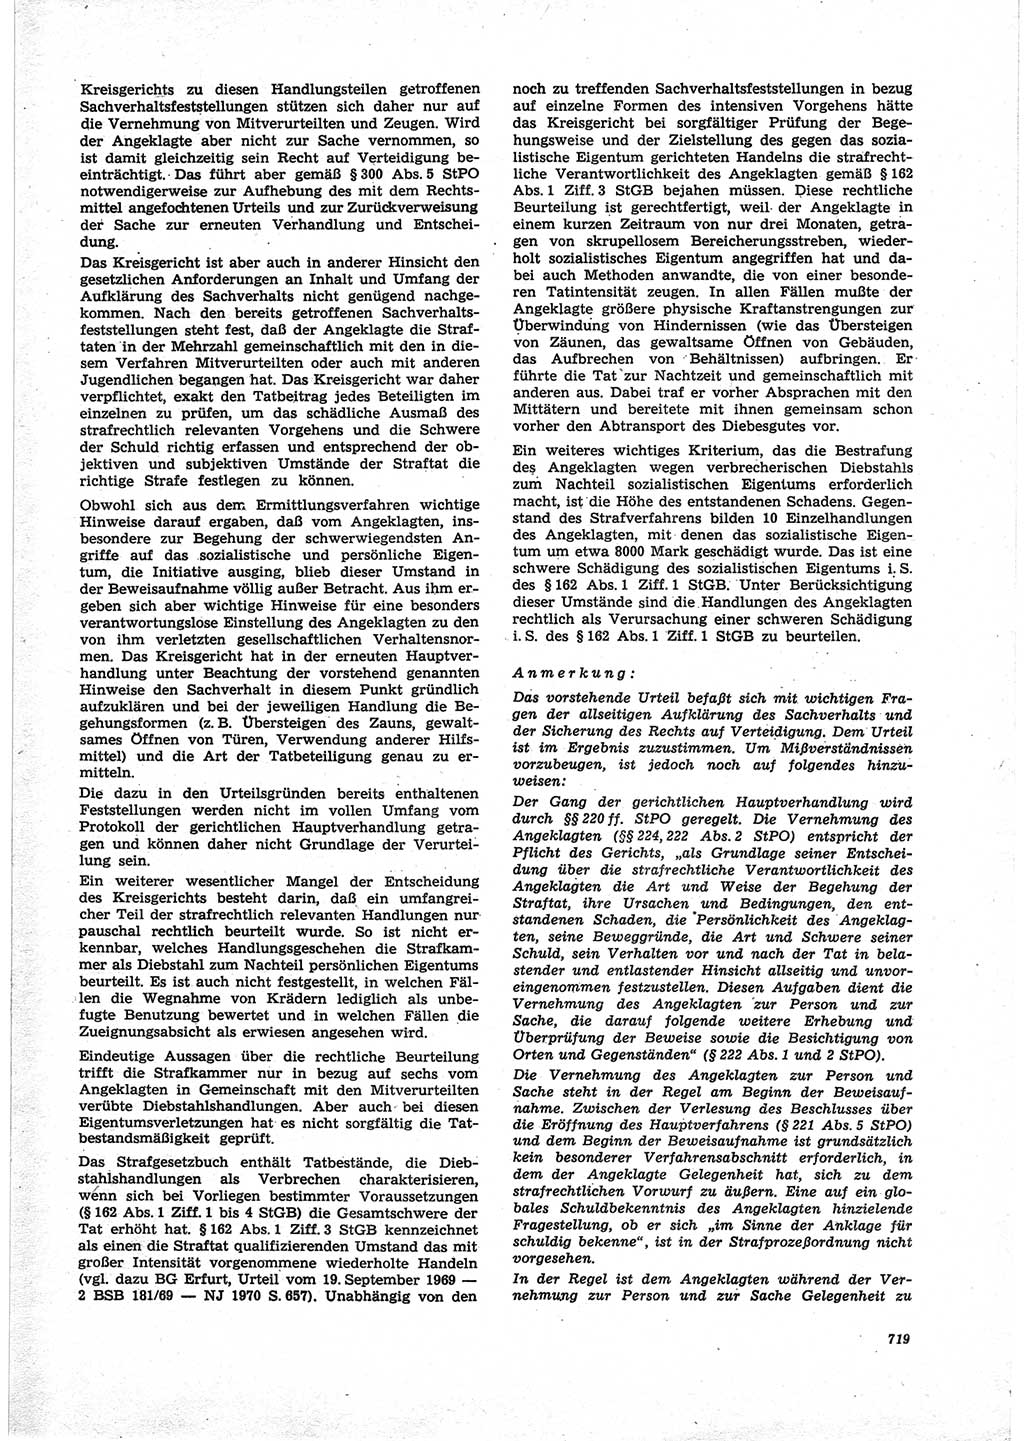 Neue Justiz (NJ), Zeitschrift für Recht und Rechtswissenschaft [Deutsche Demokratische Republik (DDR)], 25. Jahrgang 1971, Seite 719 (NJ DDR 1971, S. 719)